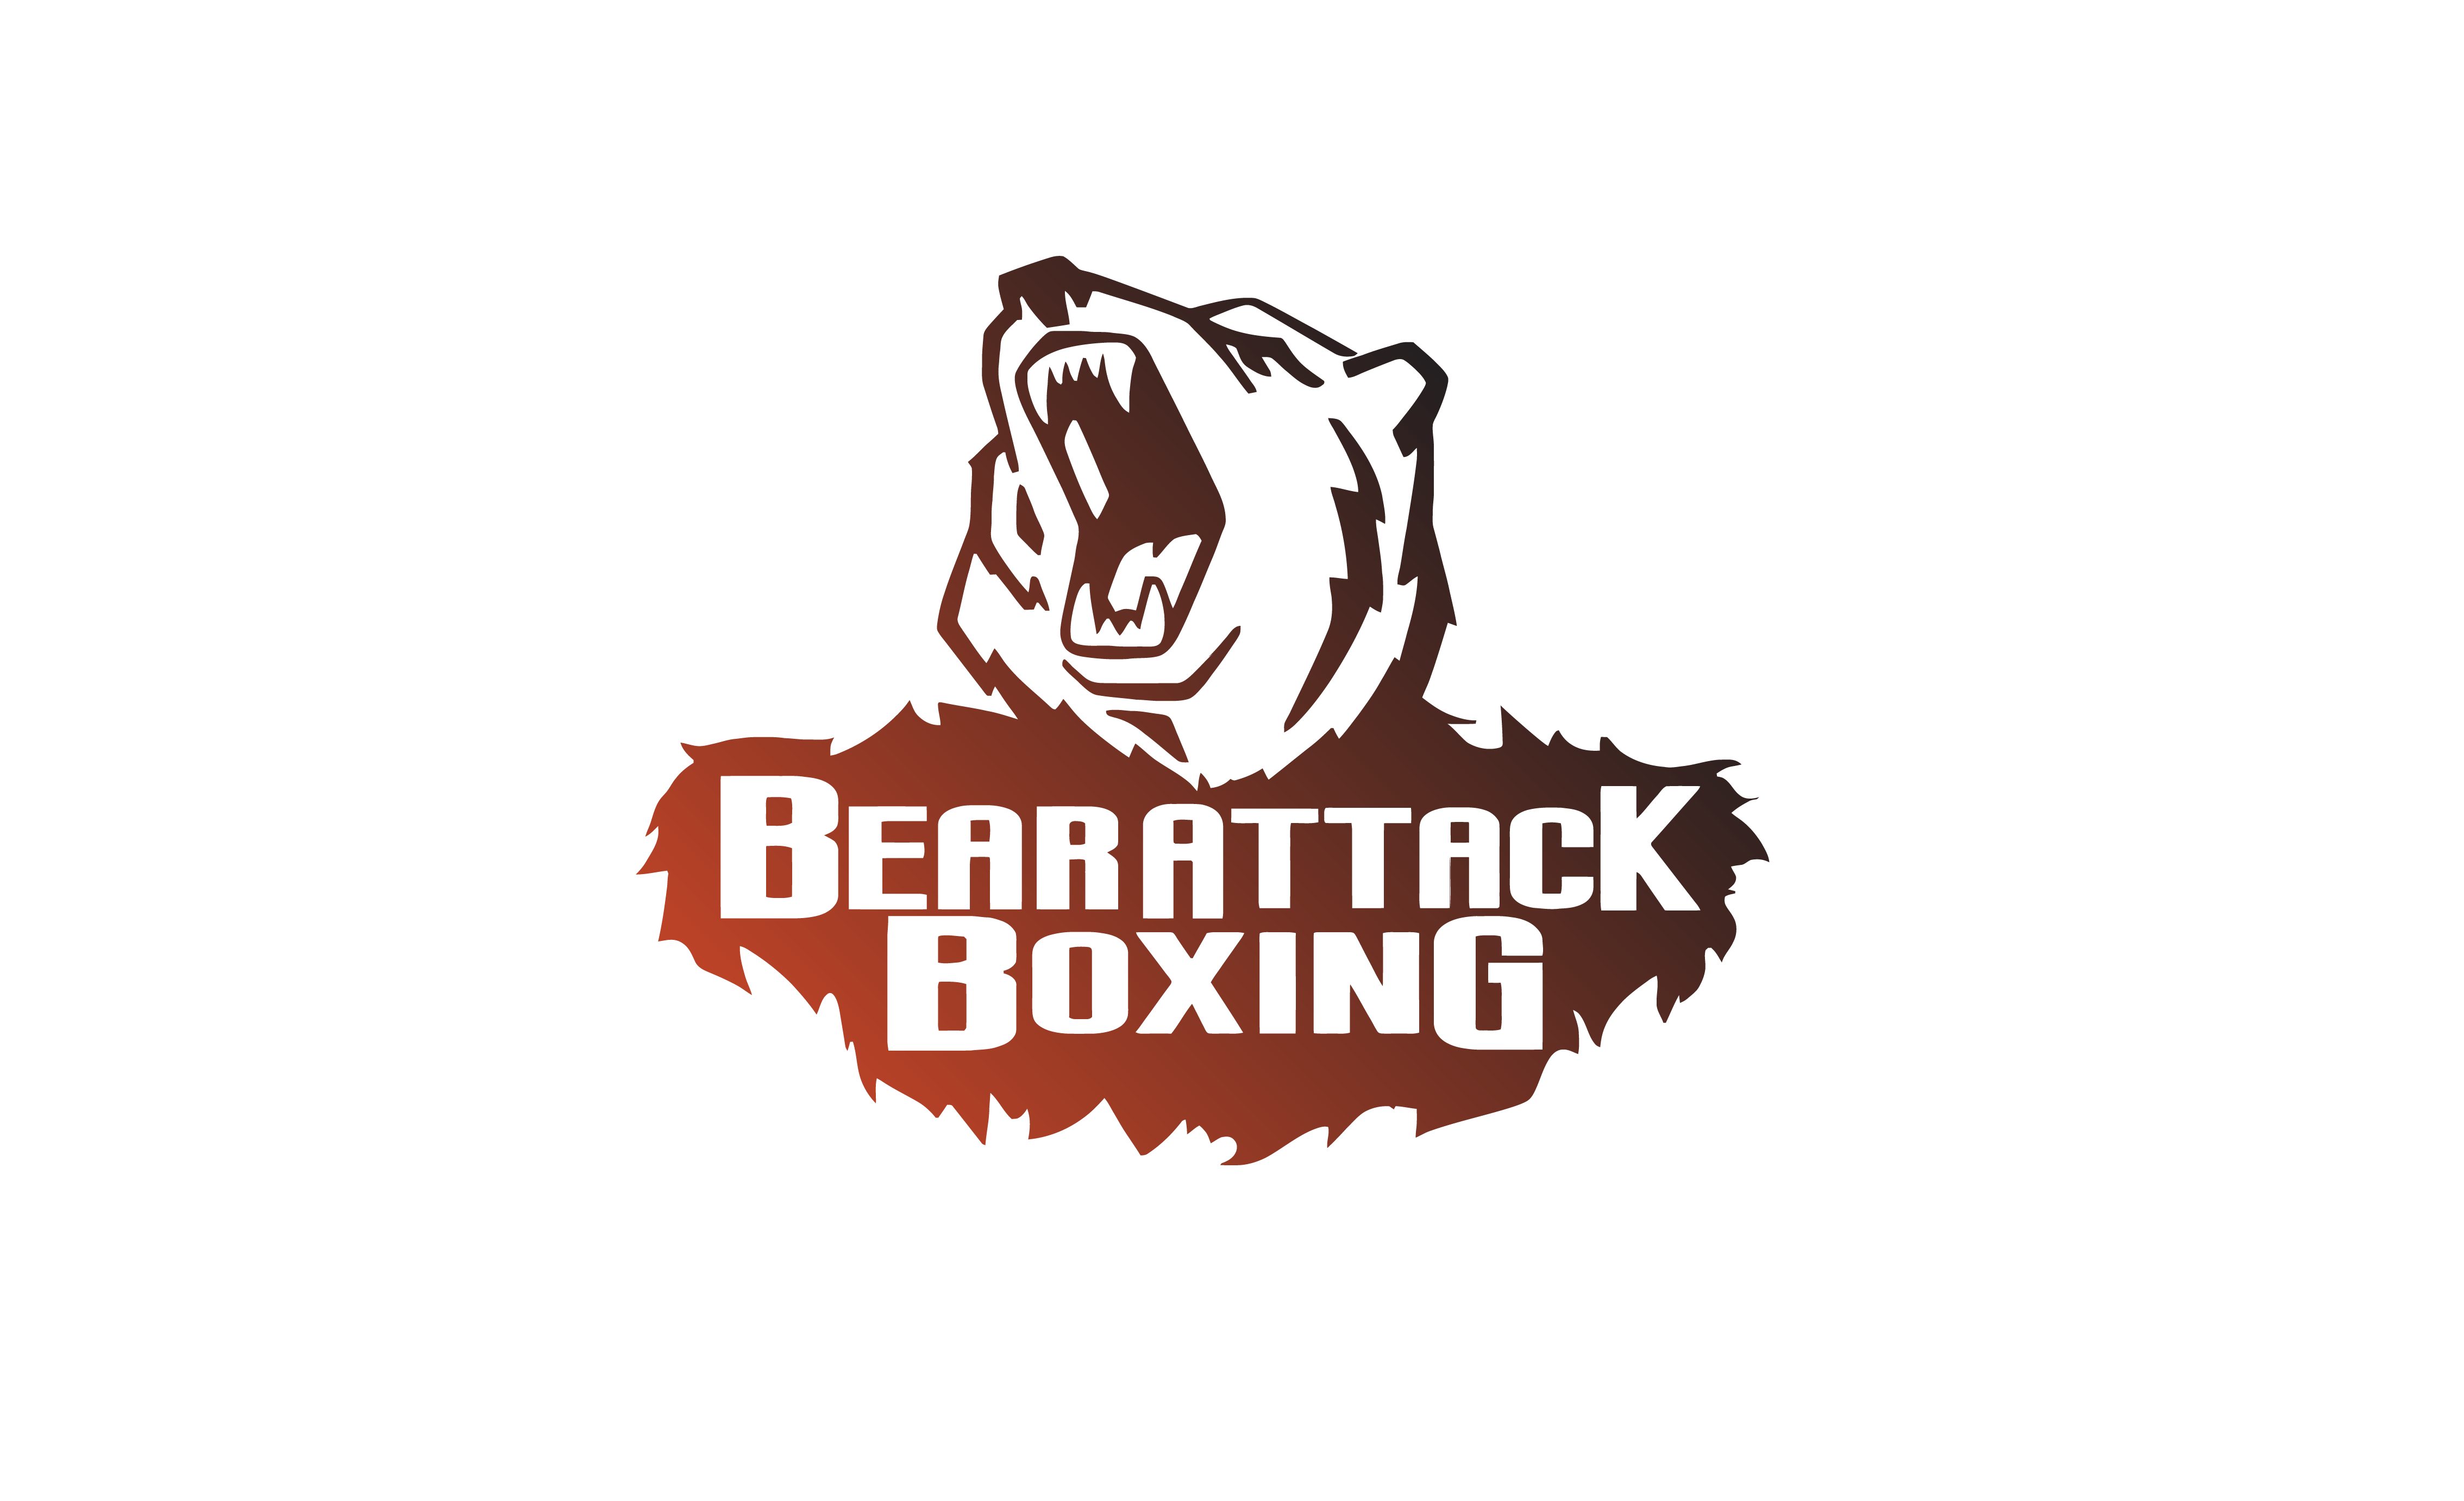 Boxing Bear Logo - Why choose Bear Attack Boxing?. Bear Attack Boxing